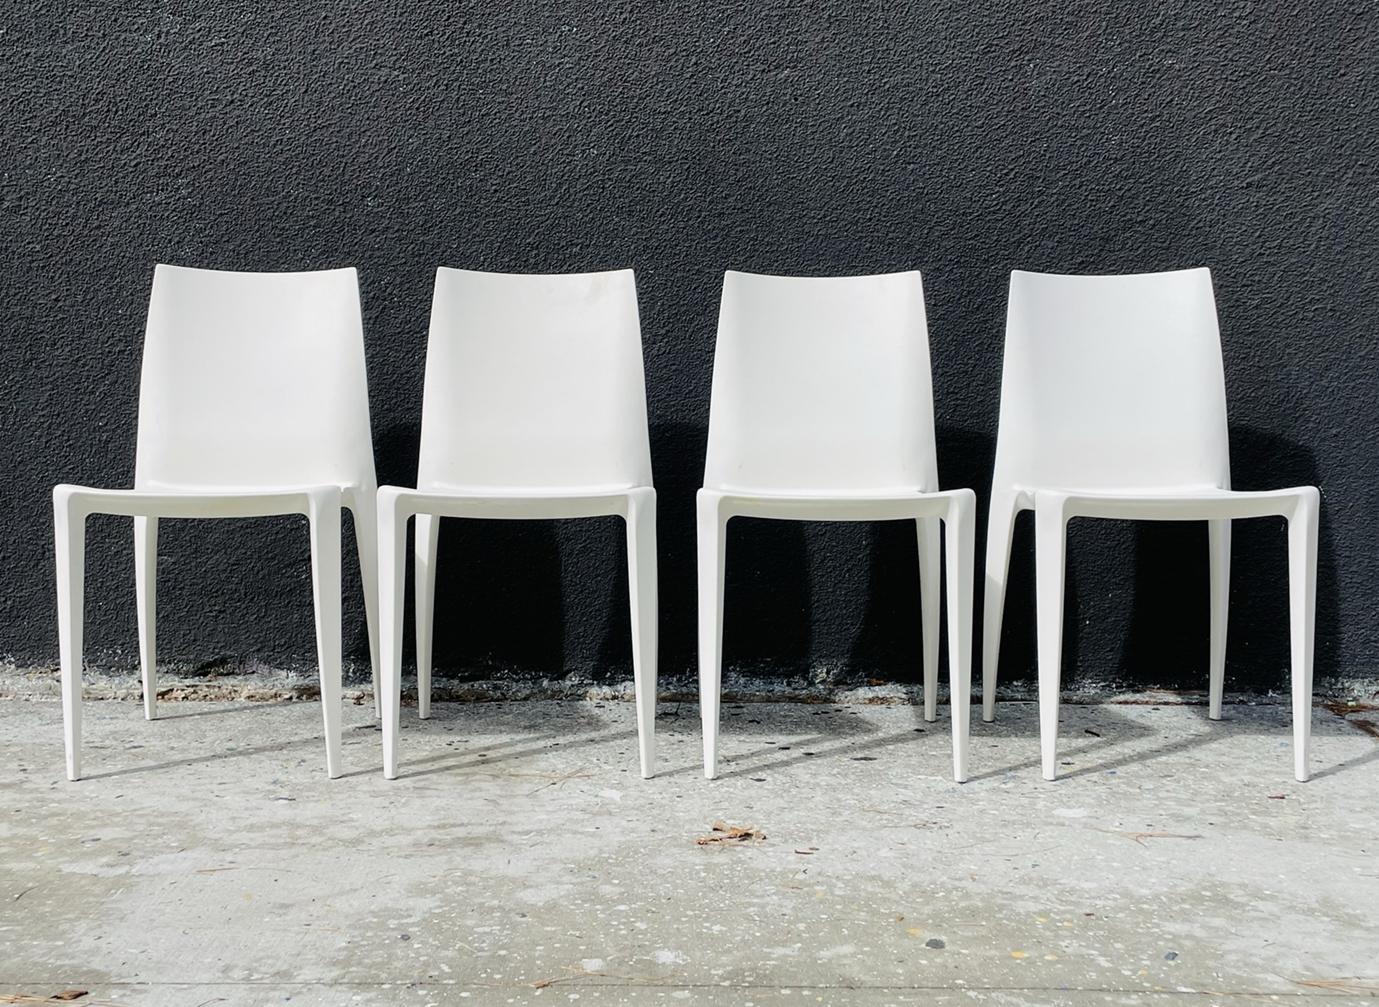 Ensemble de 4 chaises sans accoudoirs conçues en Italie par Mario Bellini et fabriquées aux États-Unis par Heller.

Cette chaise a valu au célèbre architecte et designer italien Mario Bellini son huitième prix Compasso d'Oro en 2001. Bellini fait